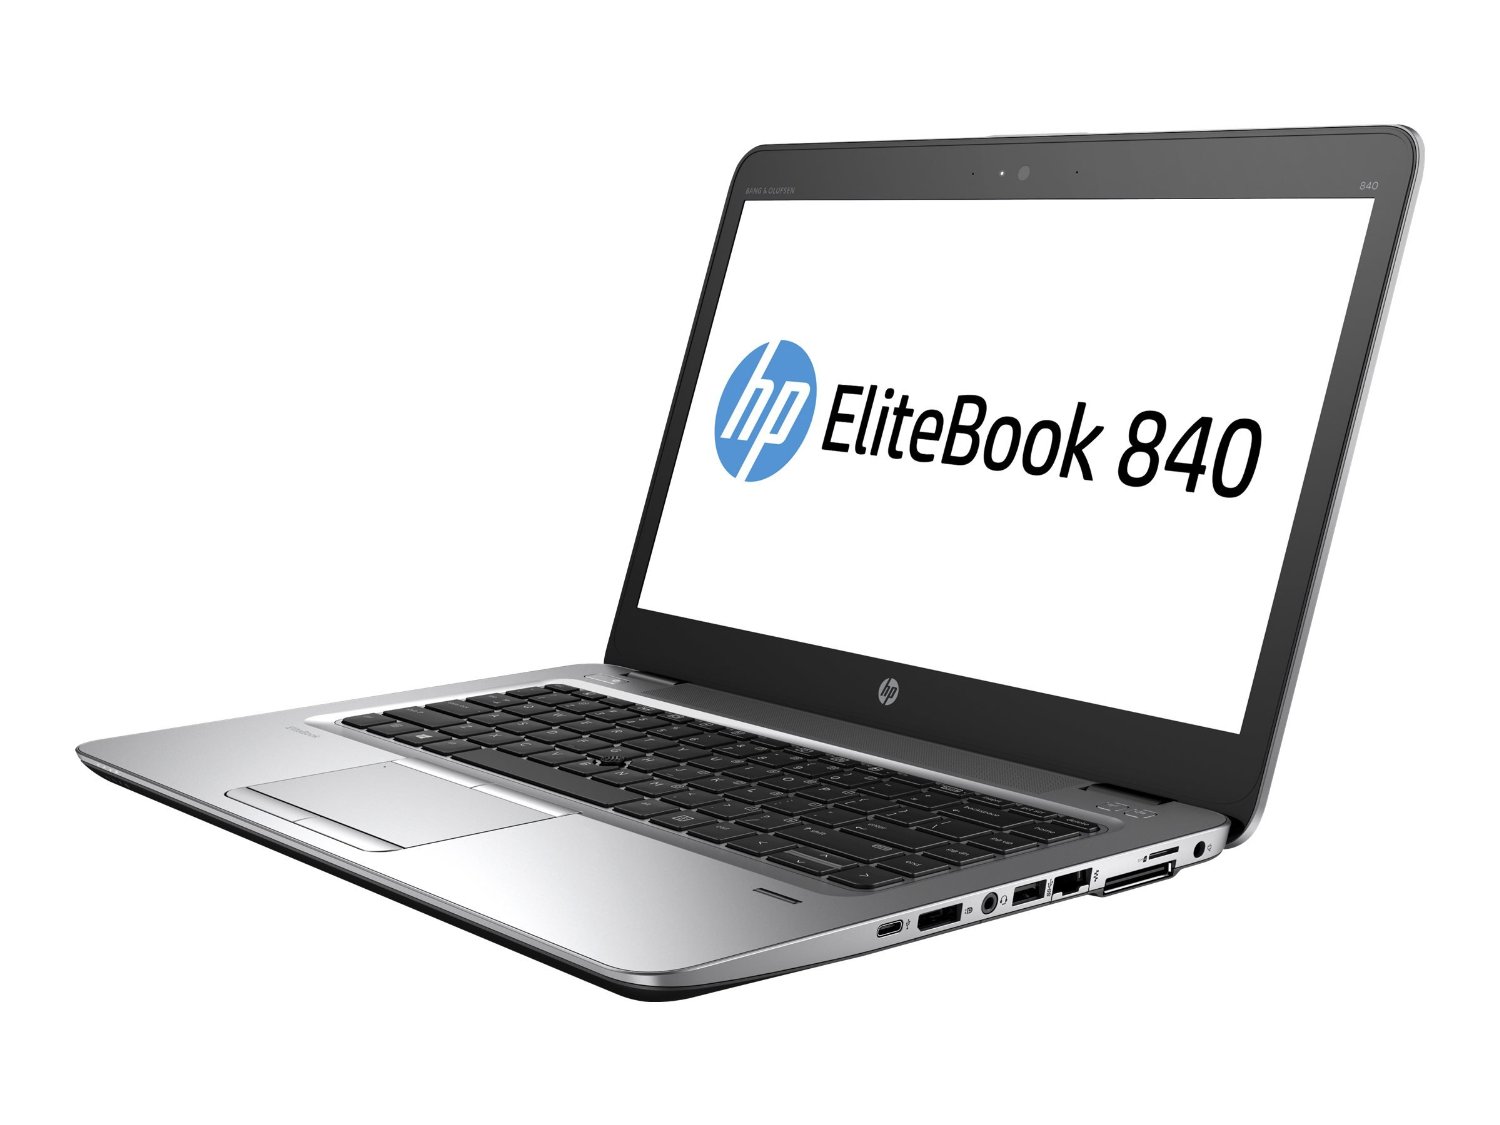 HP ELITEBOOK 840 G3 T6F46UT # ABA -PANTALLA LED 14 PULGADAS, 8GB DE RAM, 256GB SSD, TECLADO RESISTENTE AL AGUA, LECTOR DE TARJETAS DE MEDIOS, CAMARA DE 720P, WINDOWS 7 PRO 64-